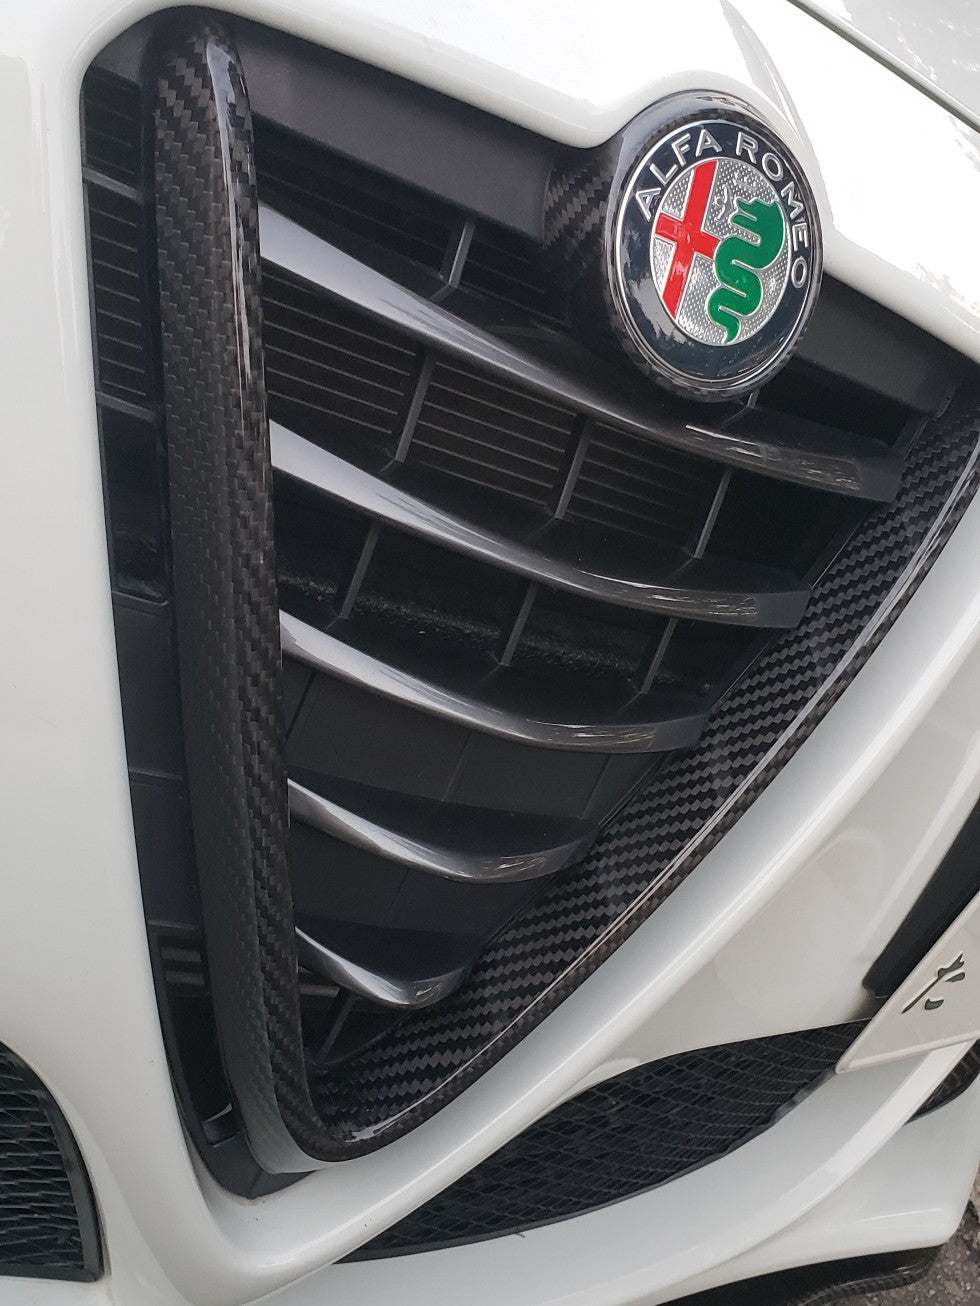 Alfa Romeo Giulietta MY 2014 Front Grille Frame Cover - Carbon Fibre Alfa Romeo Shop